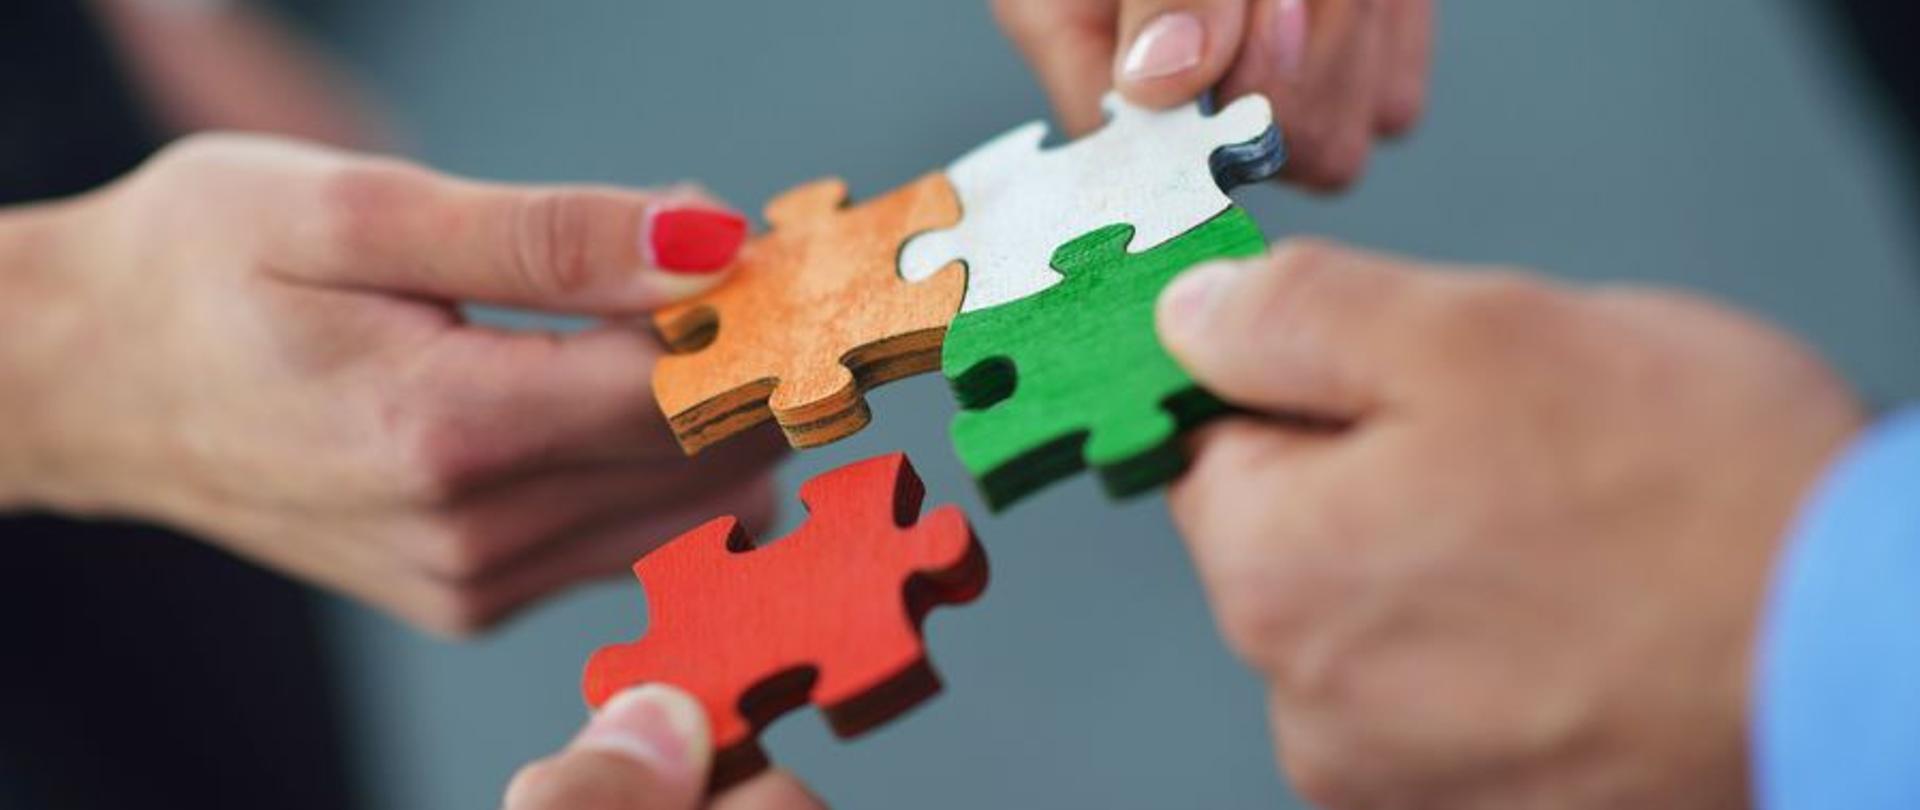 Partner poszukiwany, grupa ludzi składa puzzle jako symbol wsparcia